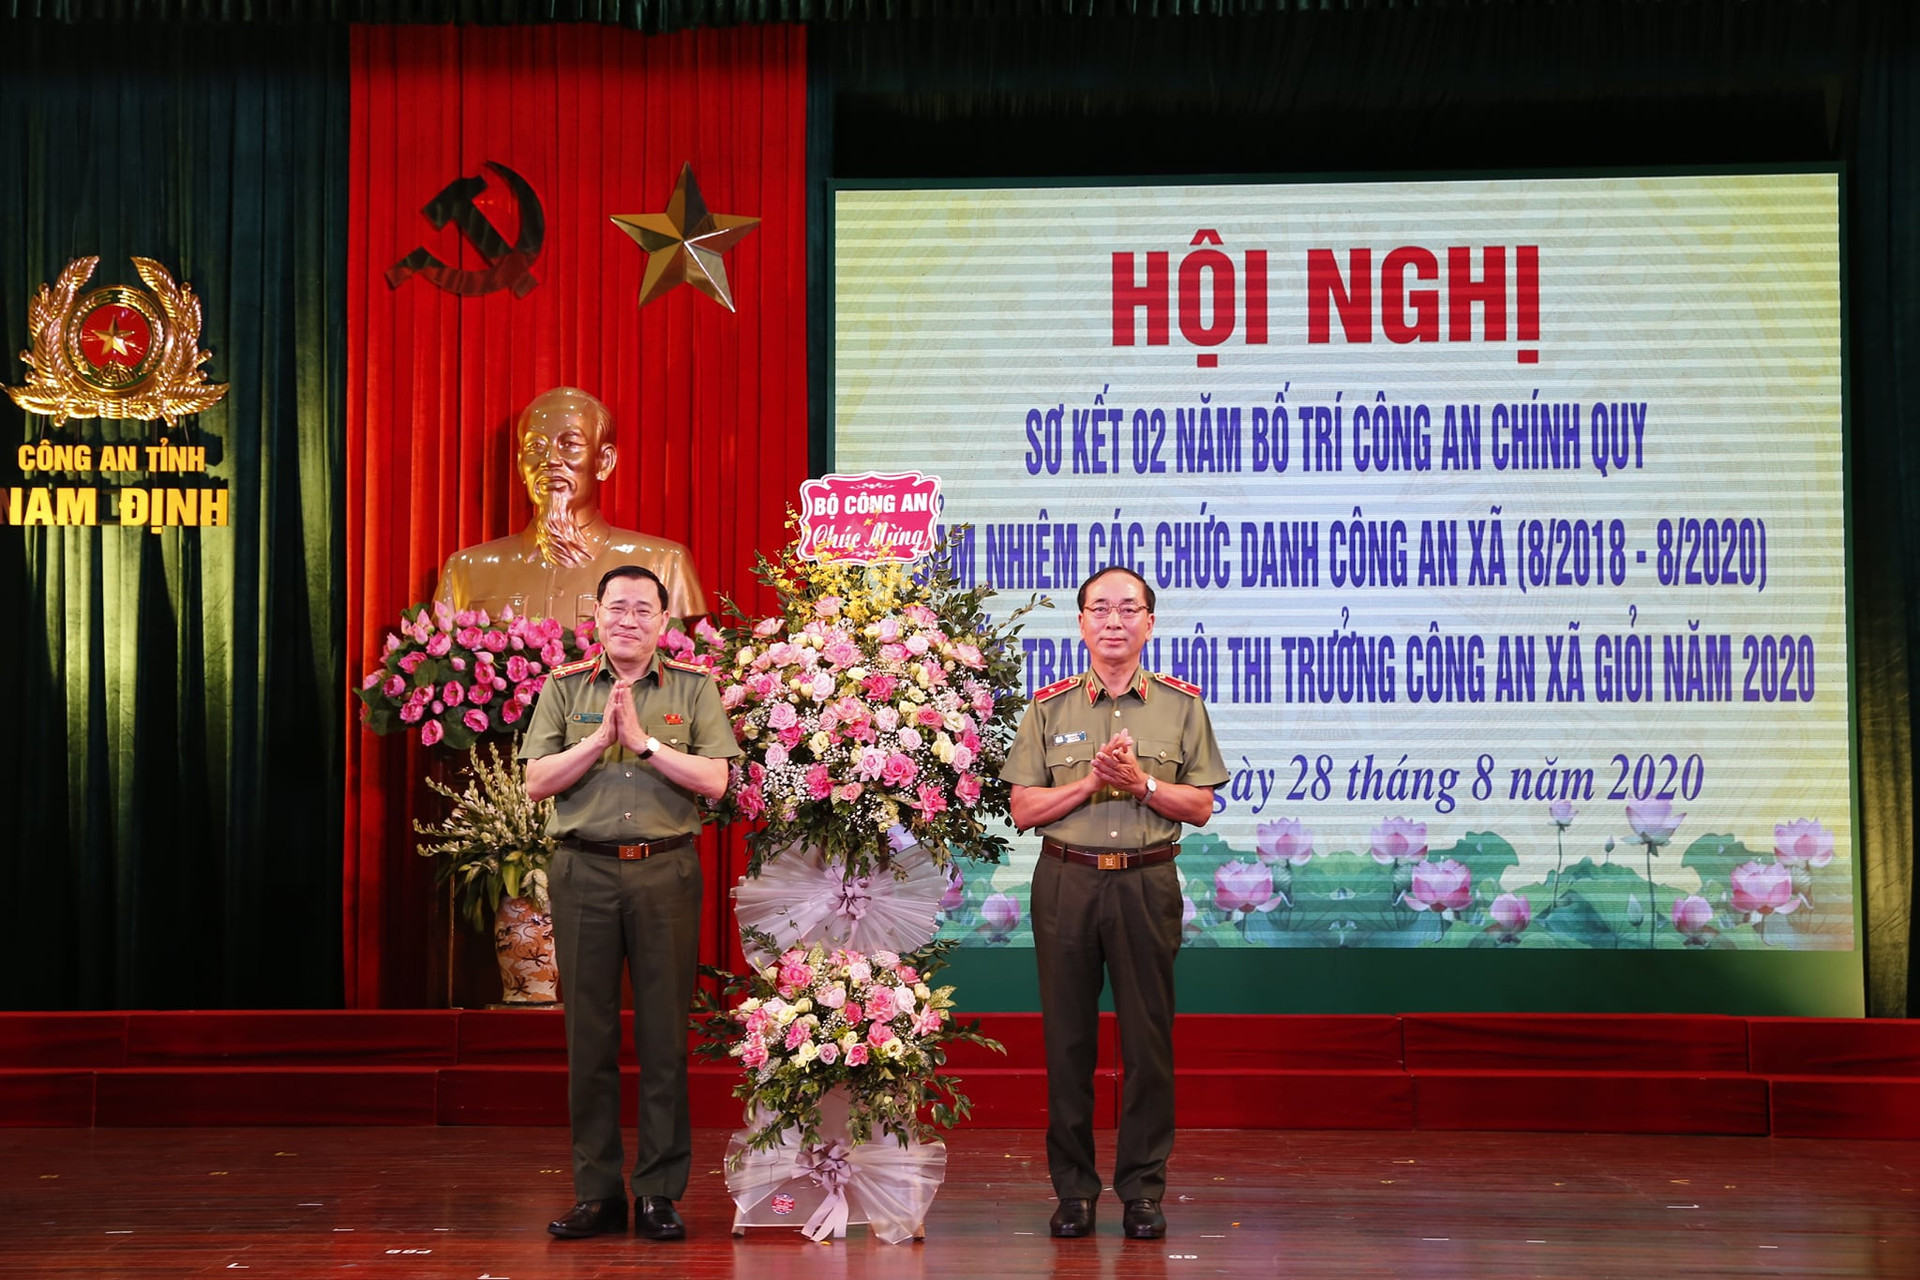 Công an tỉnh Nam Định: 100% Công an chính quy về xã góp phần hiệu quả công tác bảo đảm ANTT ở cơ sở